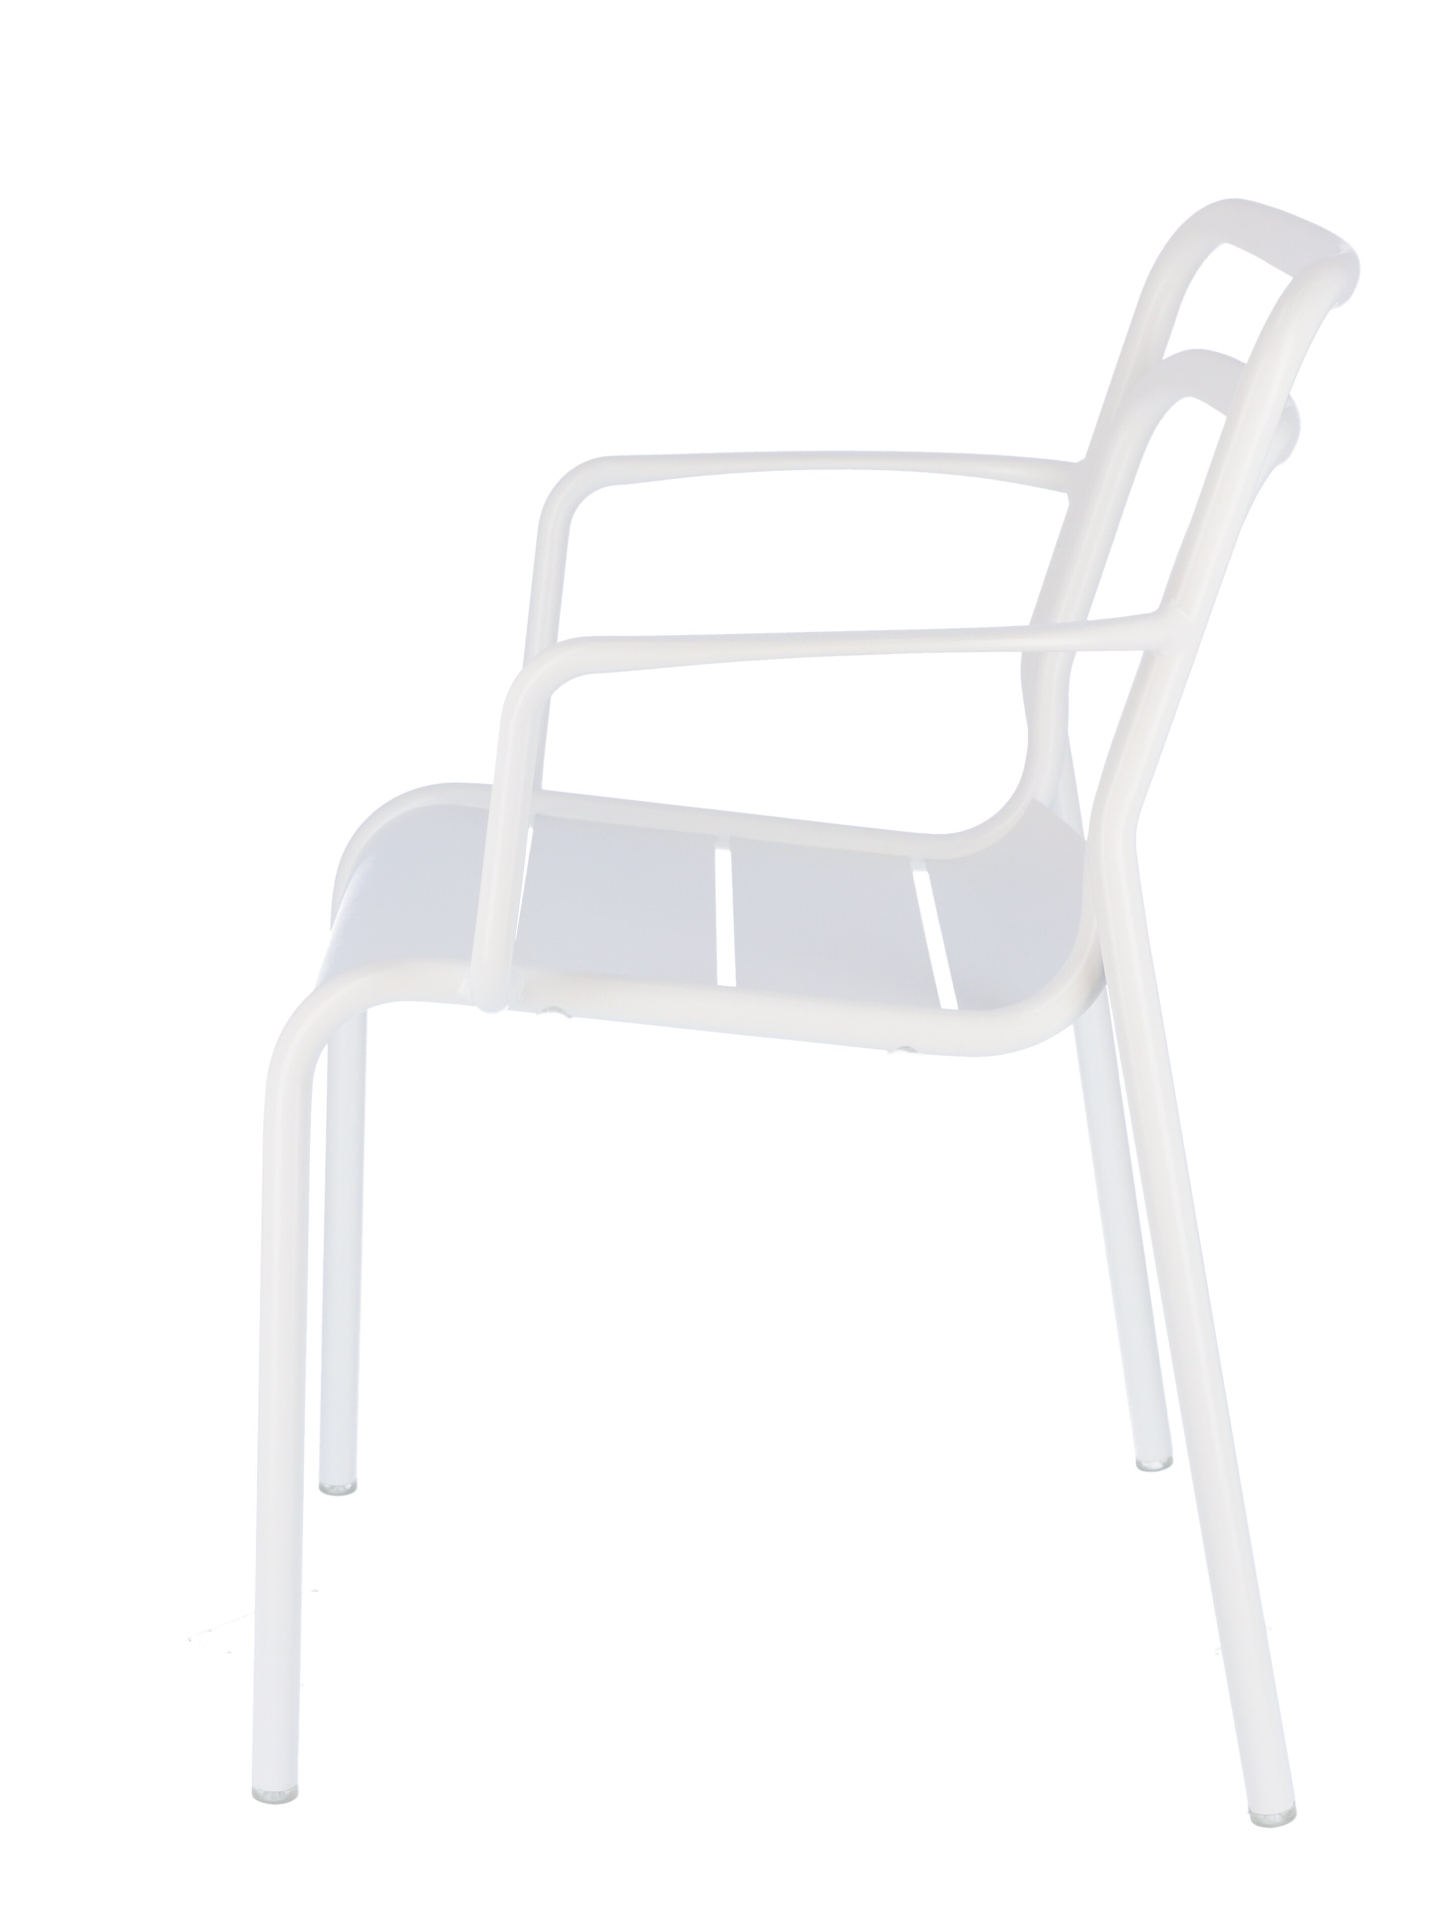 Der moderne Gartensessel Live wurde aus Aluminium hergestellt. Designet wurde er von der Marke Jan Kurtz. Die Farbe des Sessels ist Weiß.